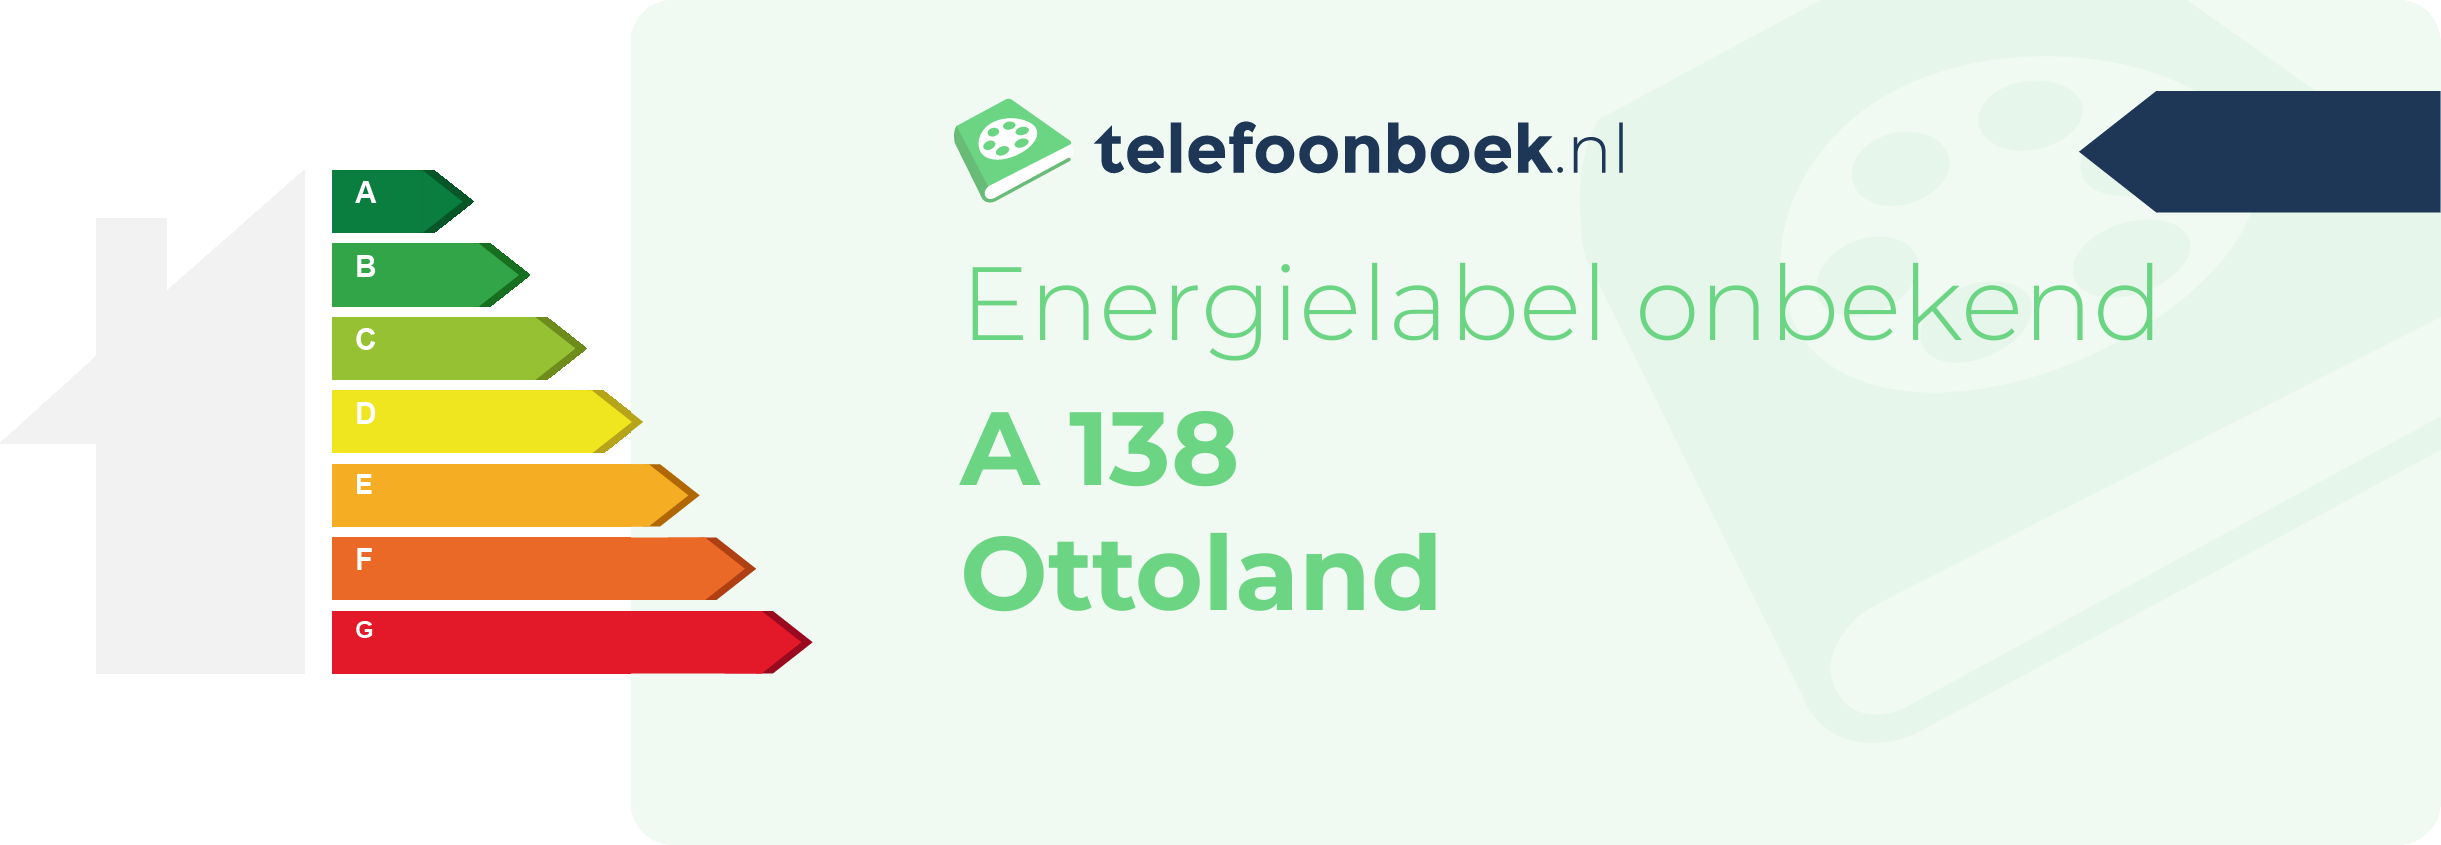 Energielabel A 138 Ottoland